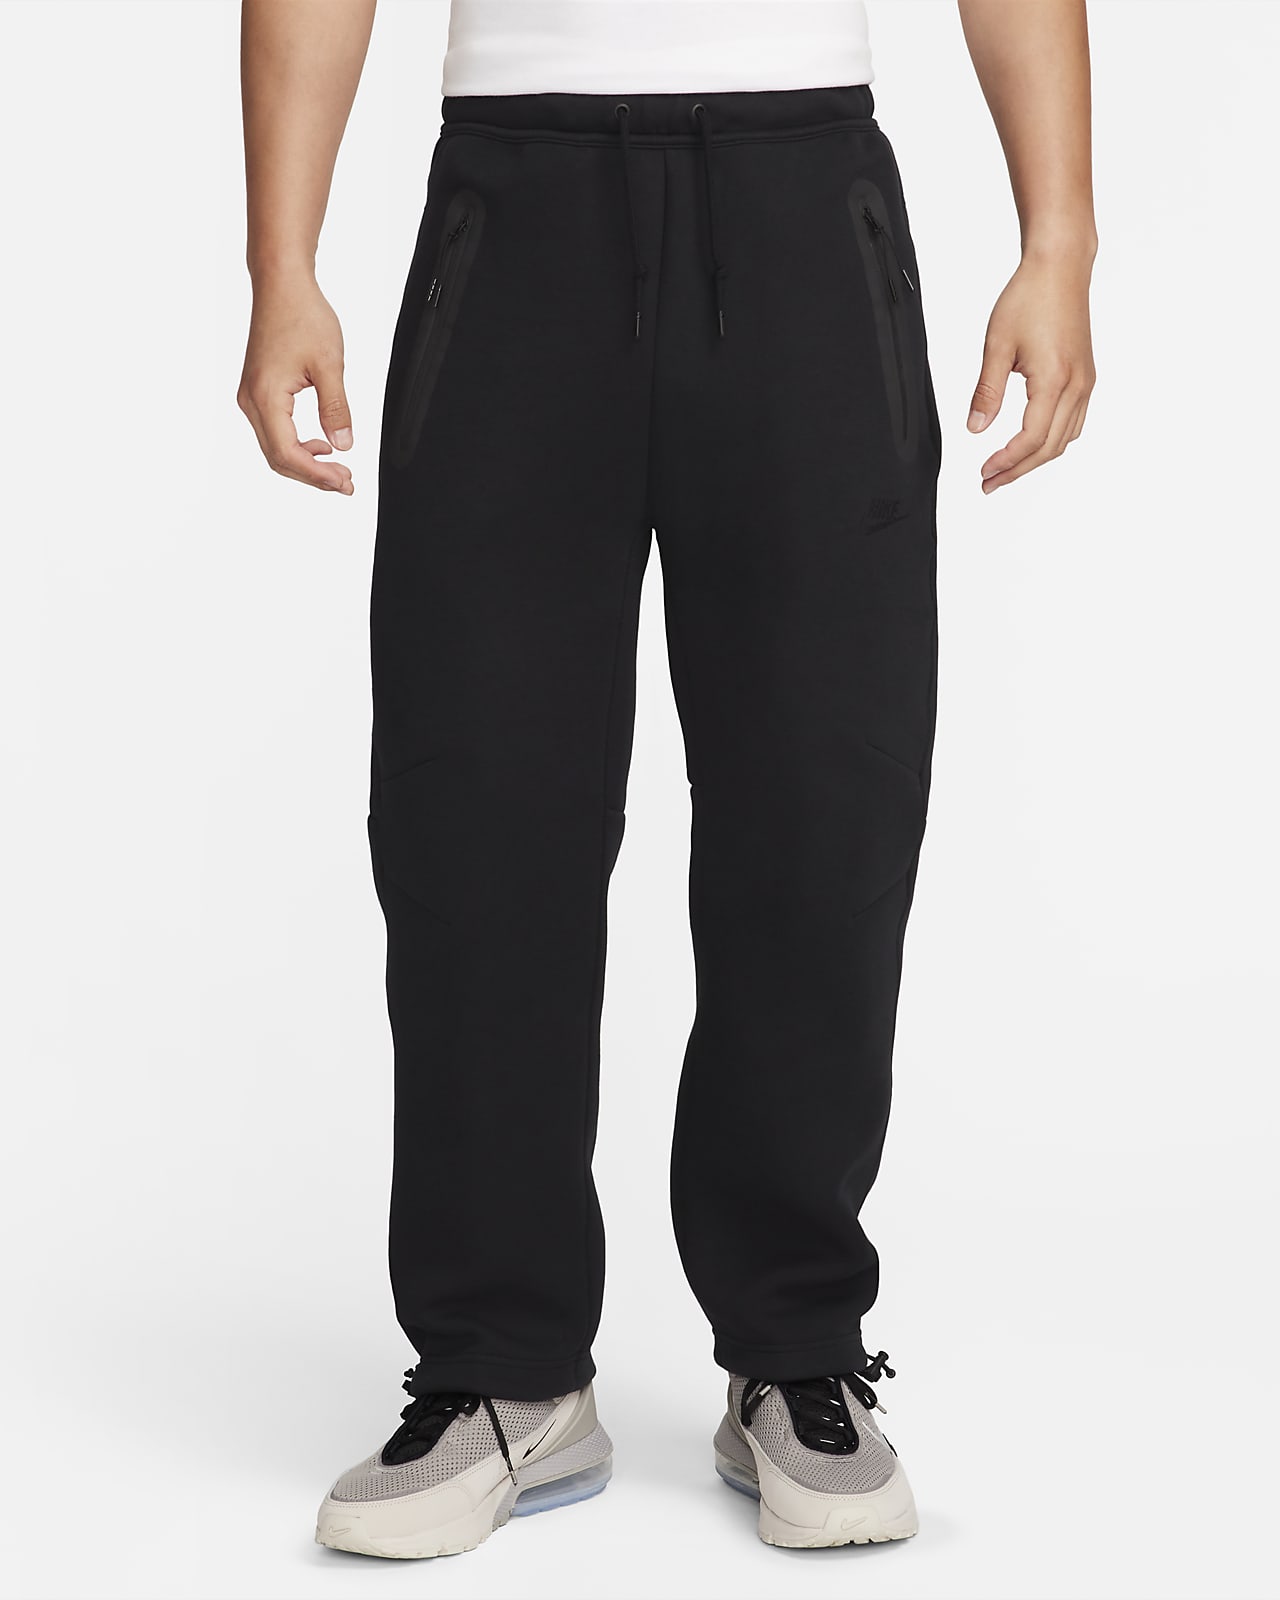 Nike Sportswear Tech Fleece 男子空气层运动裤